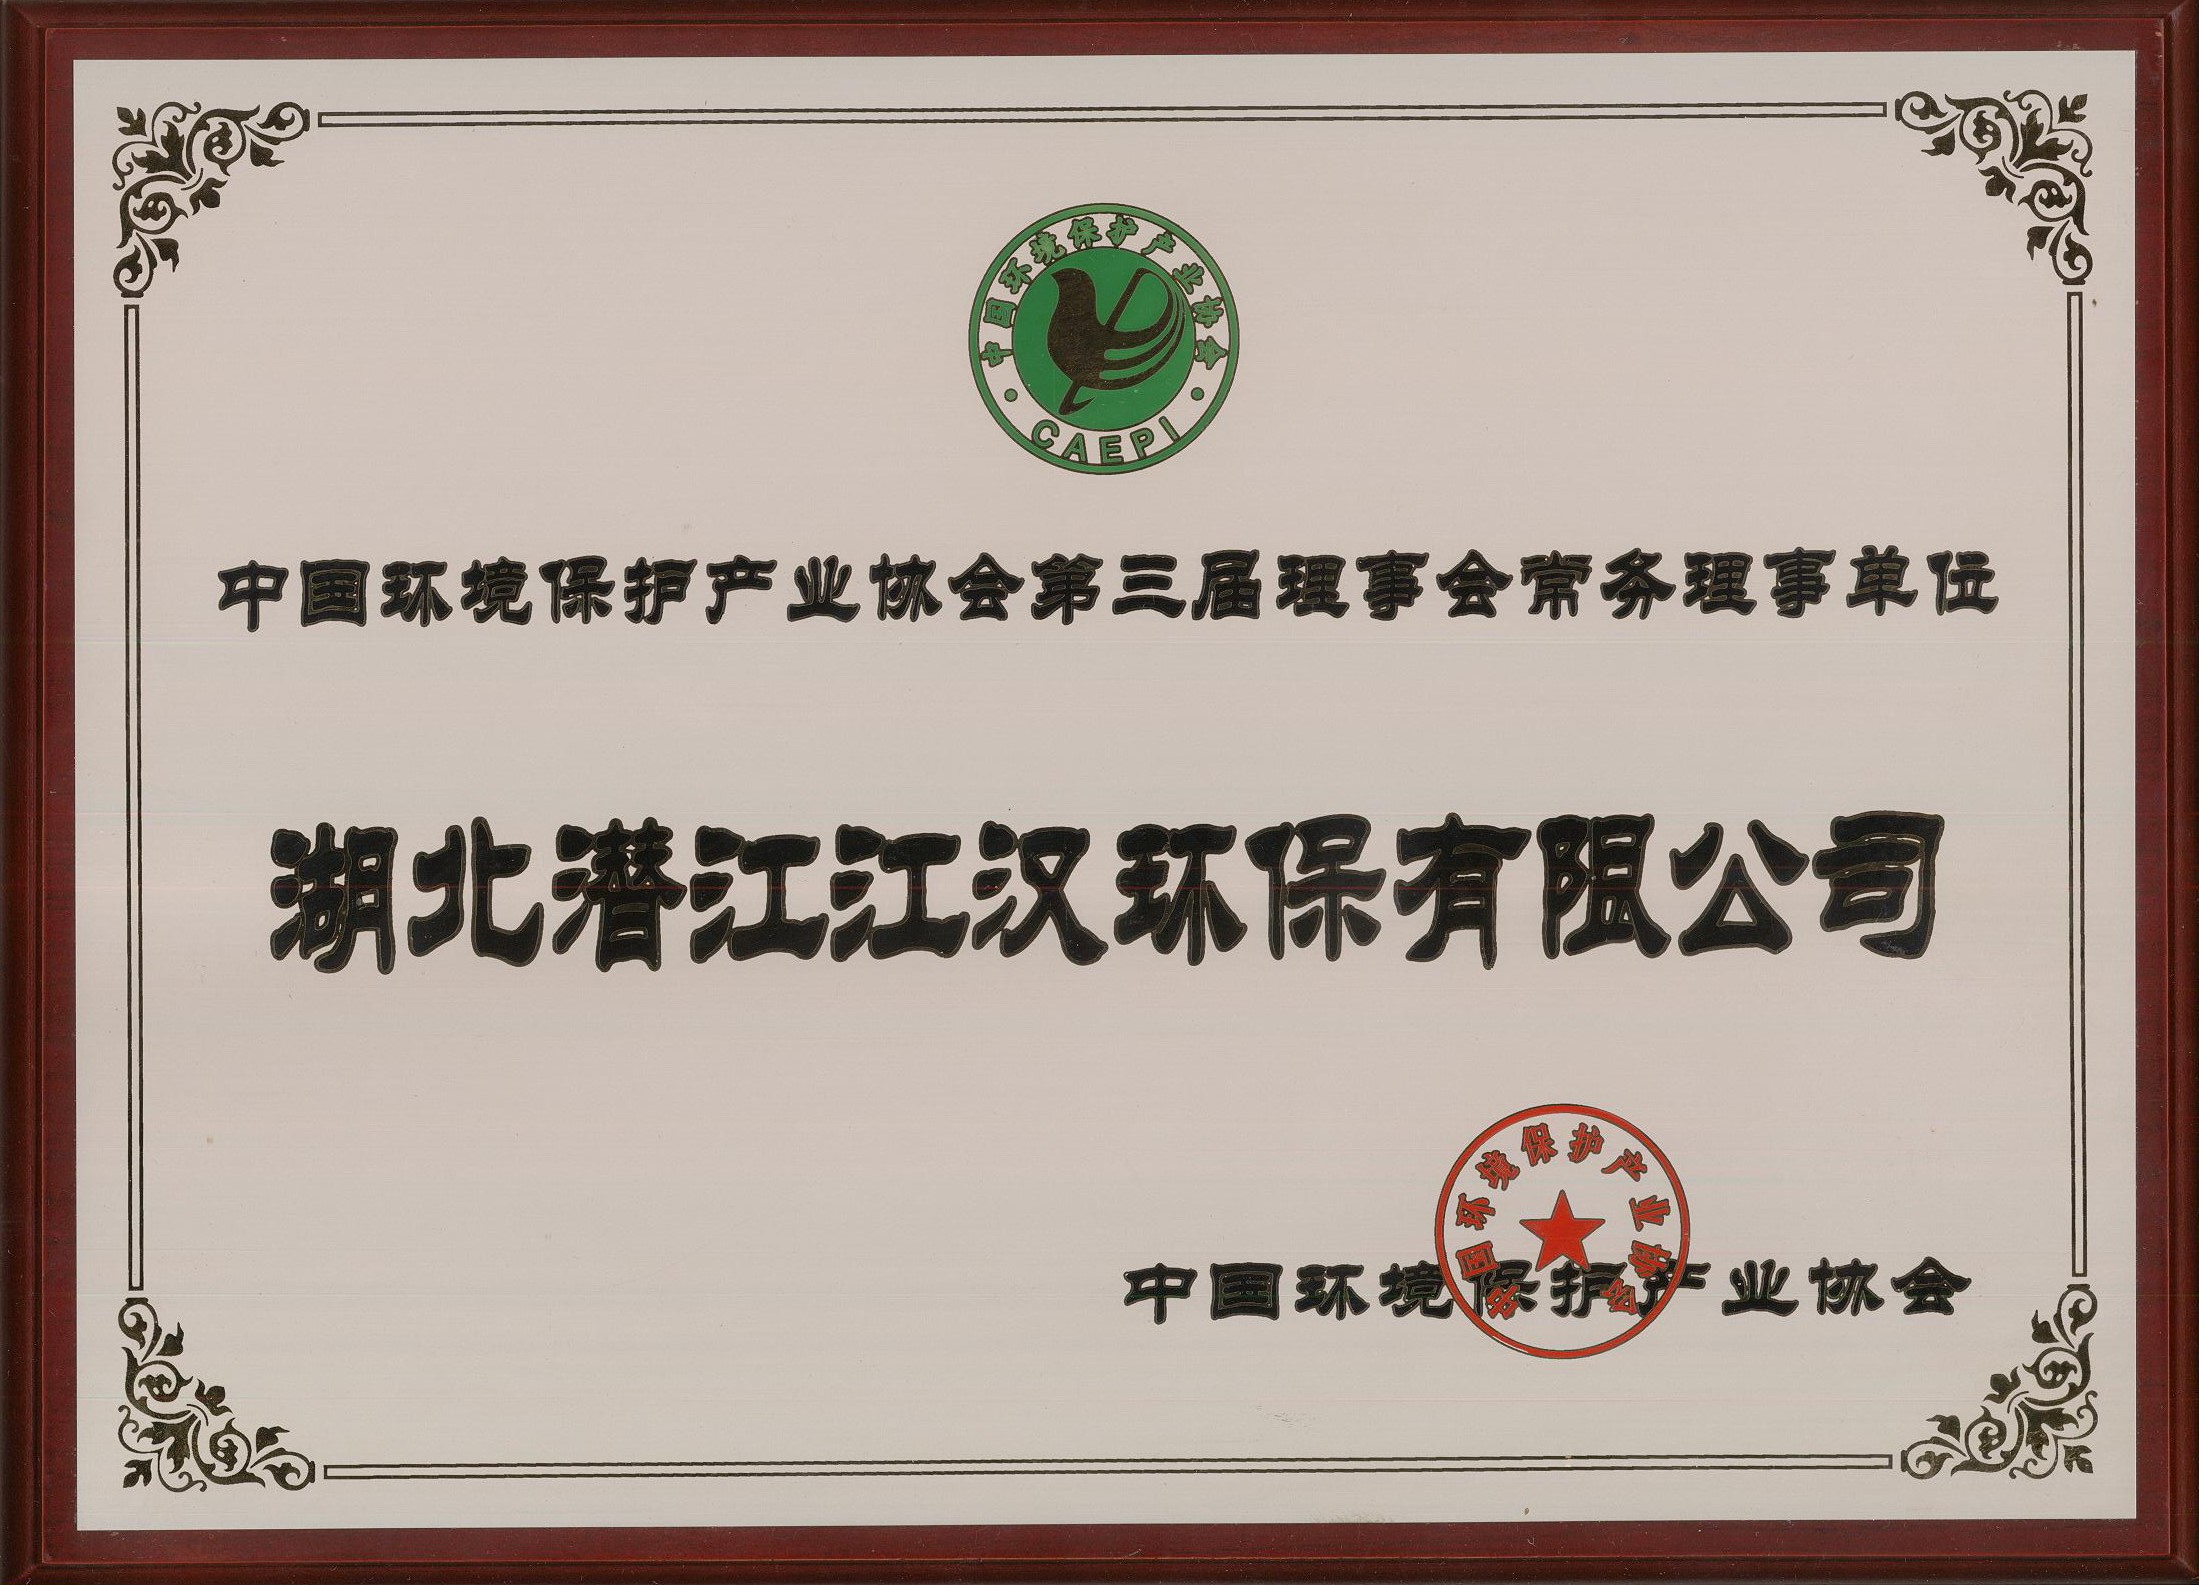 中国环境保护产业协会常务理事单位